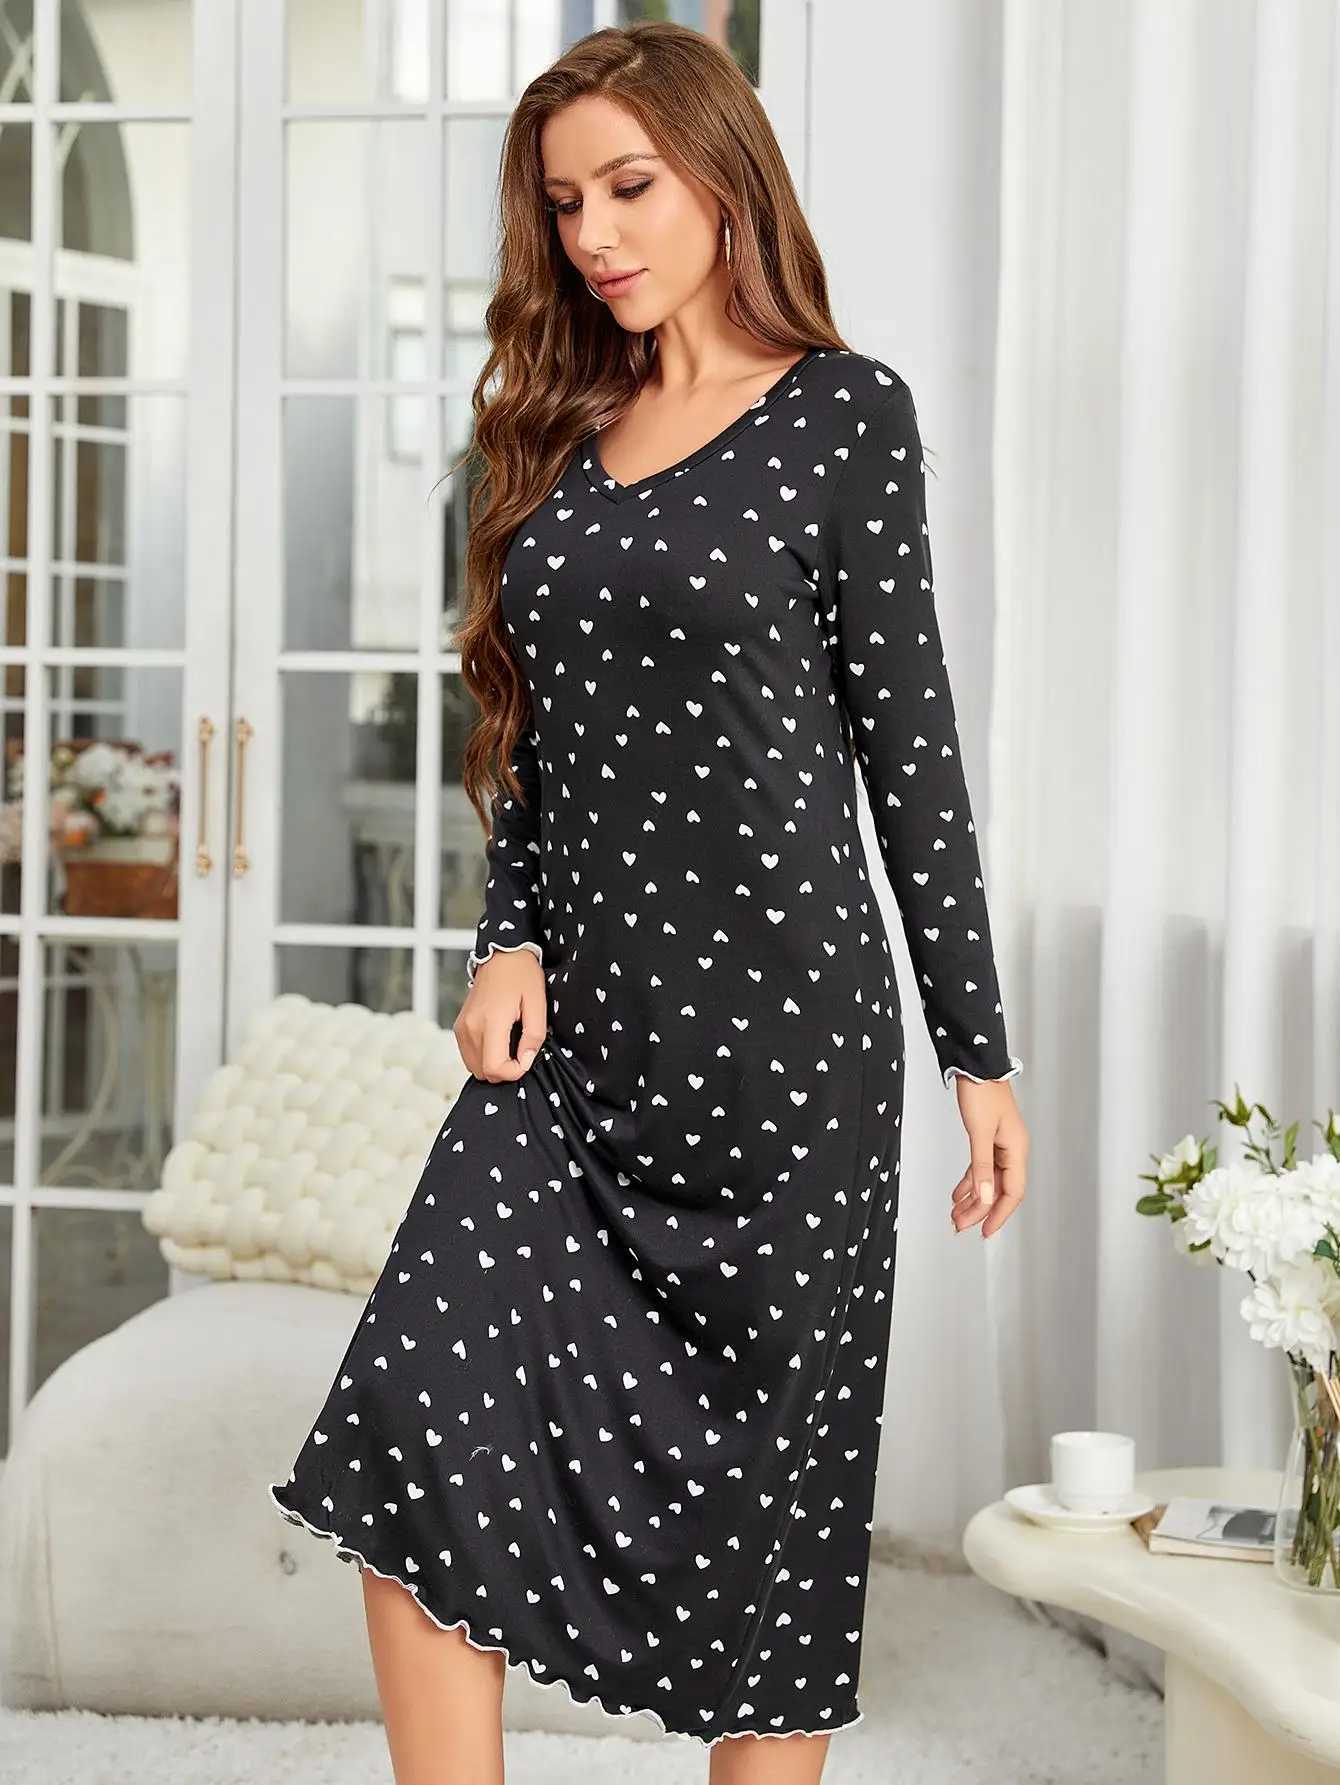 Women's Sleepwear Heart Print Women Nightgown V Neck Long Slves Slpwear Ruffle Hem Fall Female Nightwear Homwear Clothing Pajama Dress Y240426